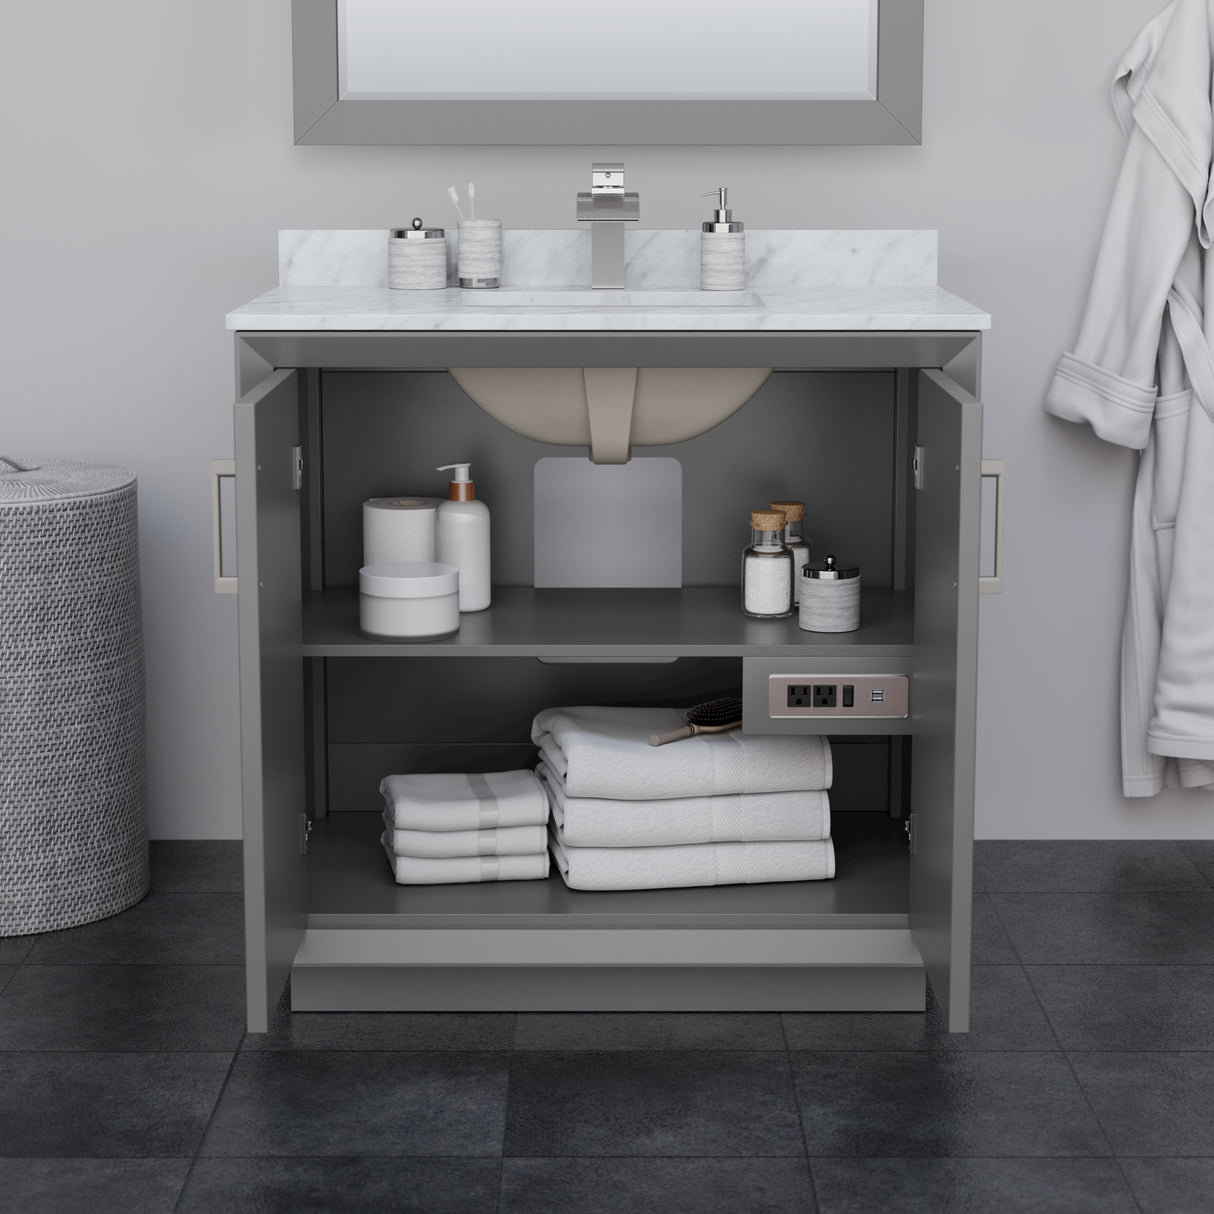 Strada 36 Inch Single Bathroom Vanity in Dark Gray No Countertop No Sink Matte Black Trim 34 Inch Mirror